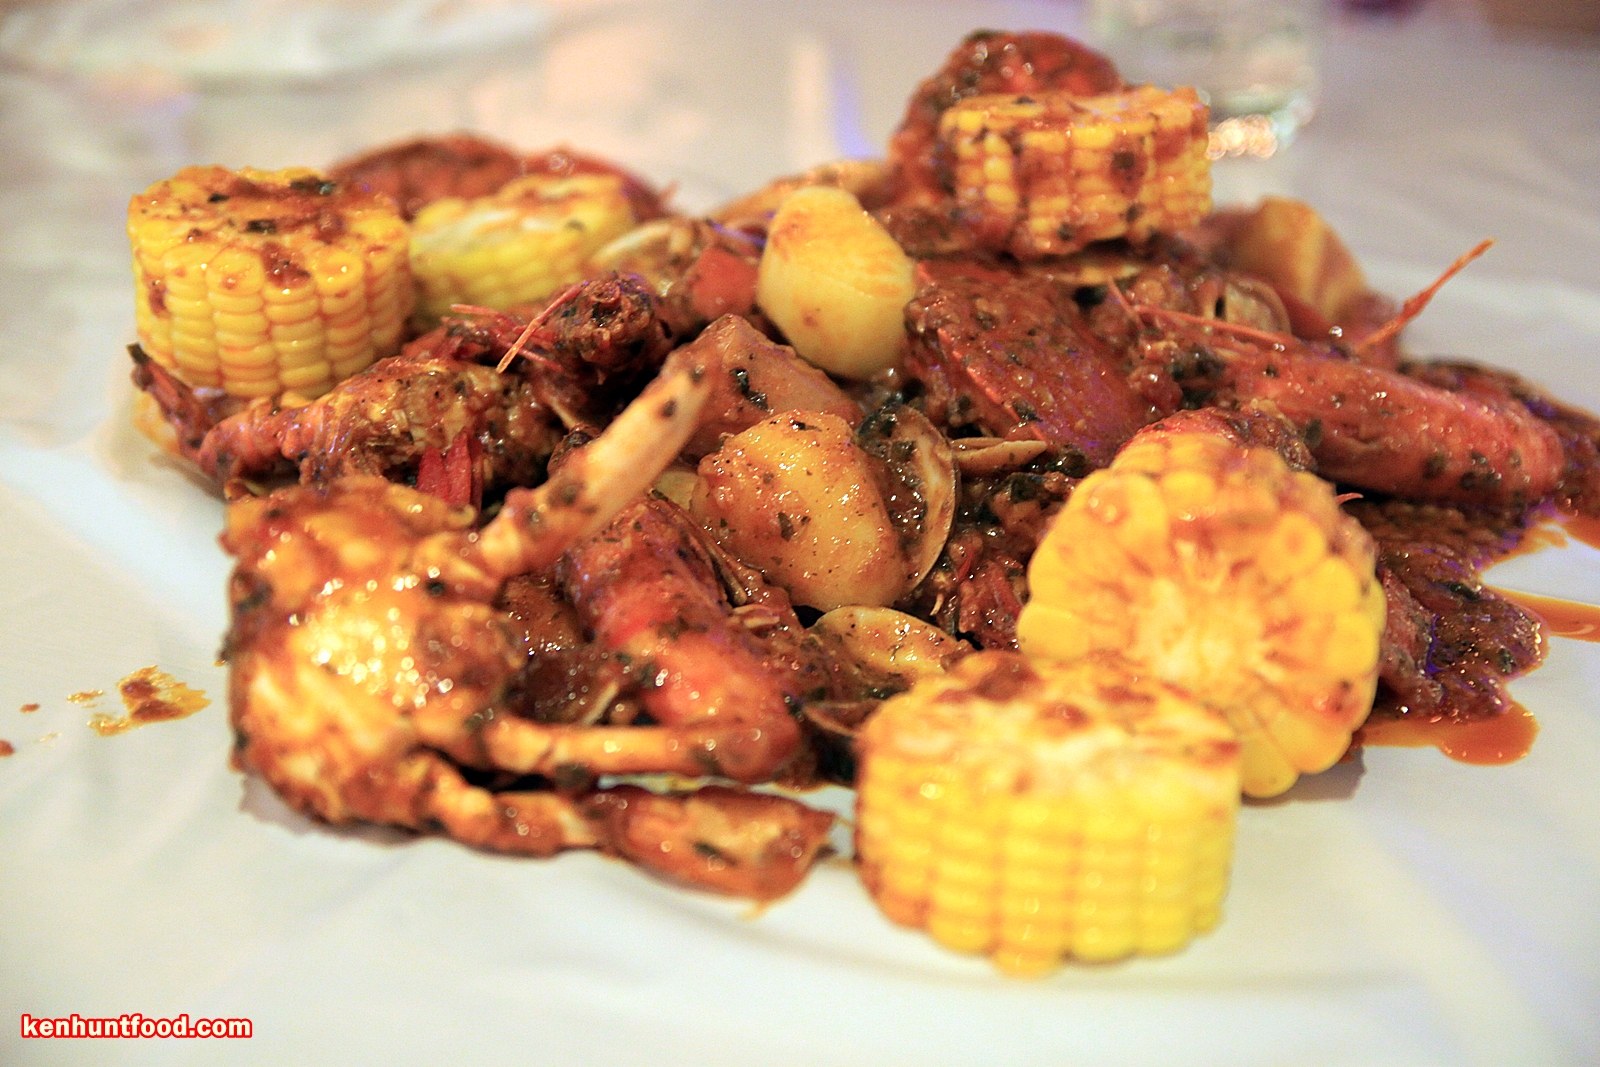 Ken Hunts Food: Crab & Lobster @ Straits Quay, Penang.